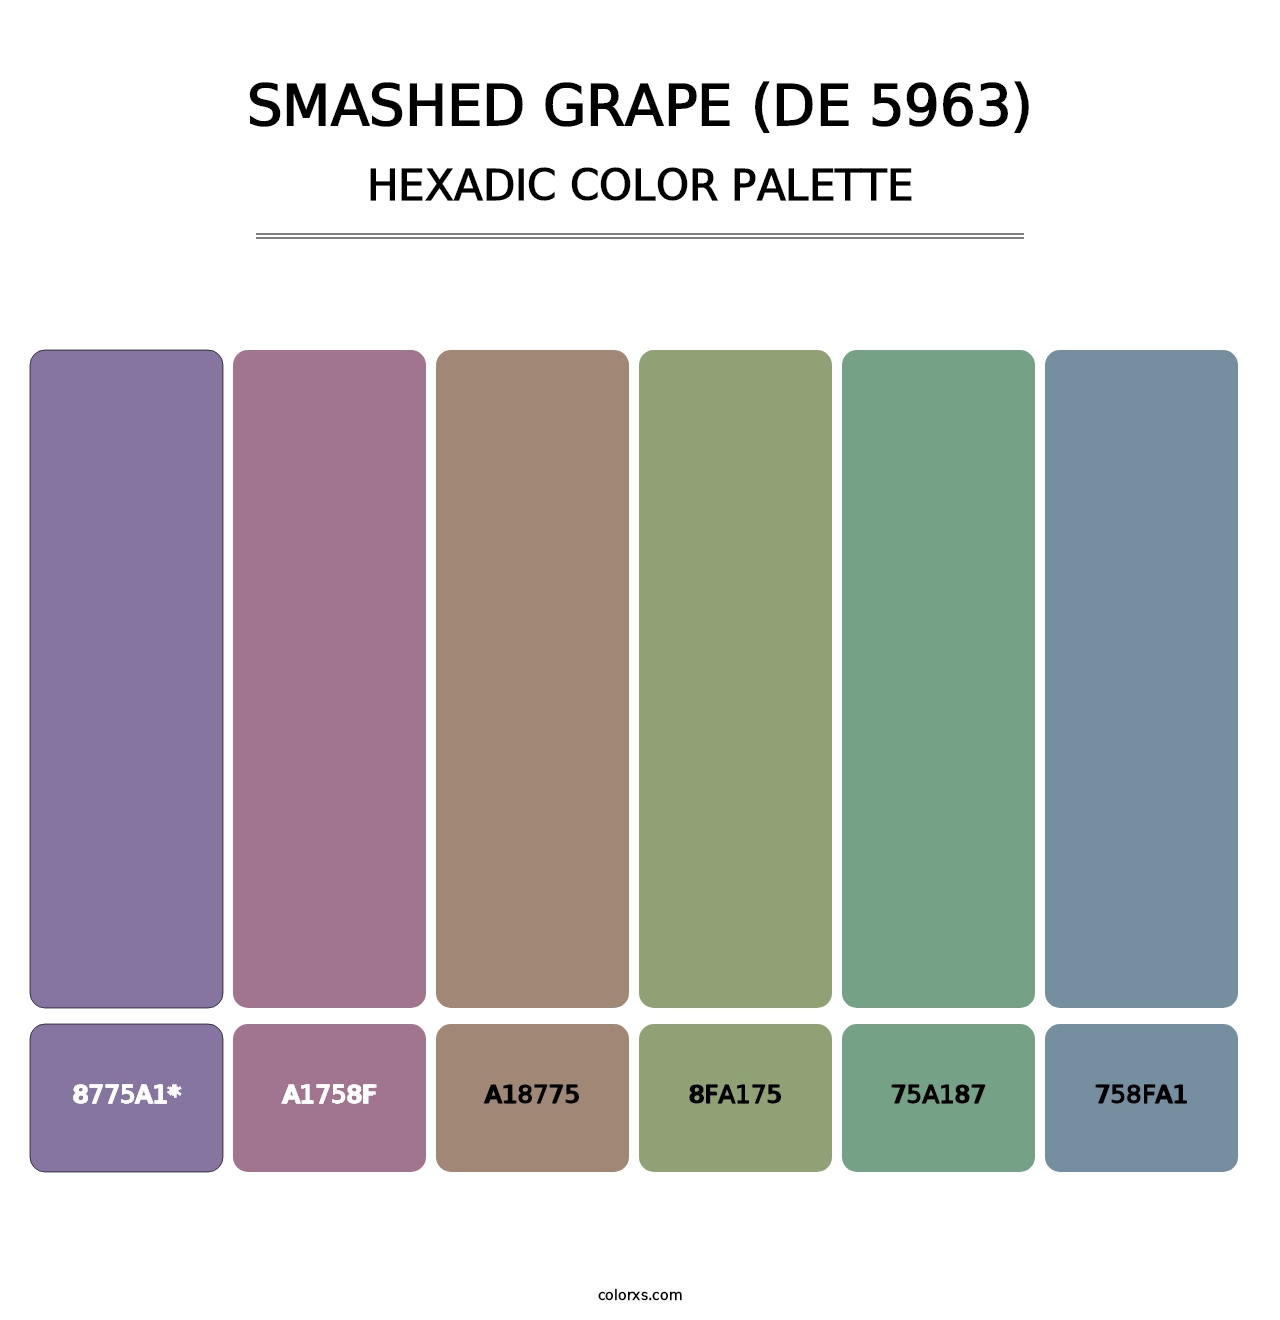 Smashed Grape (DE 5963) - Hexadic Color Palette